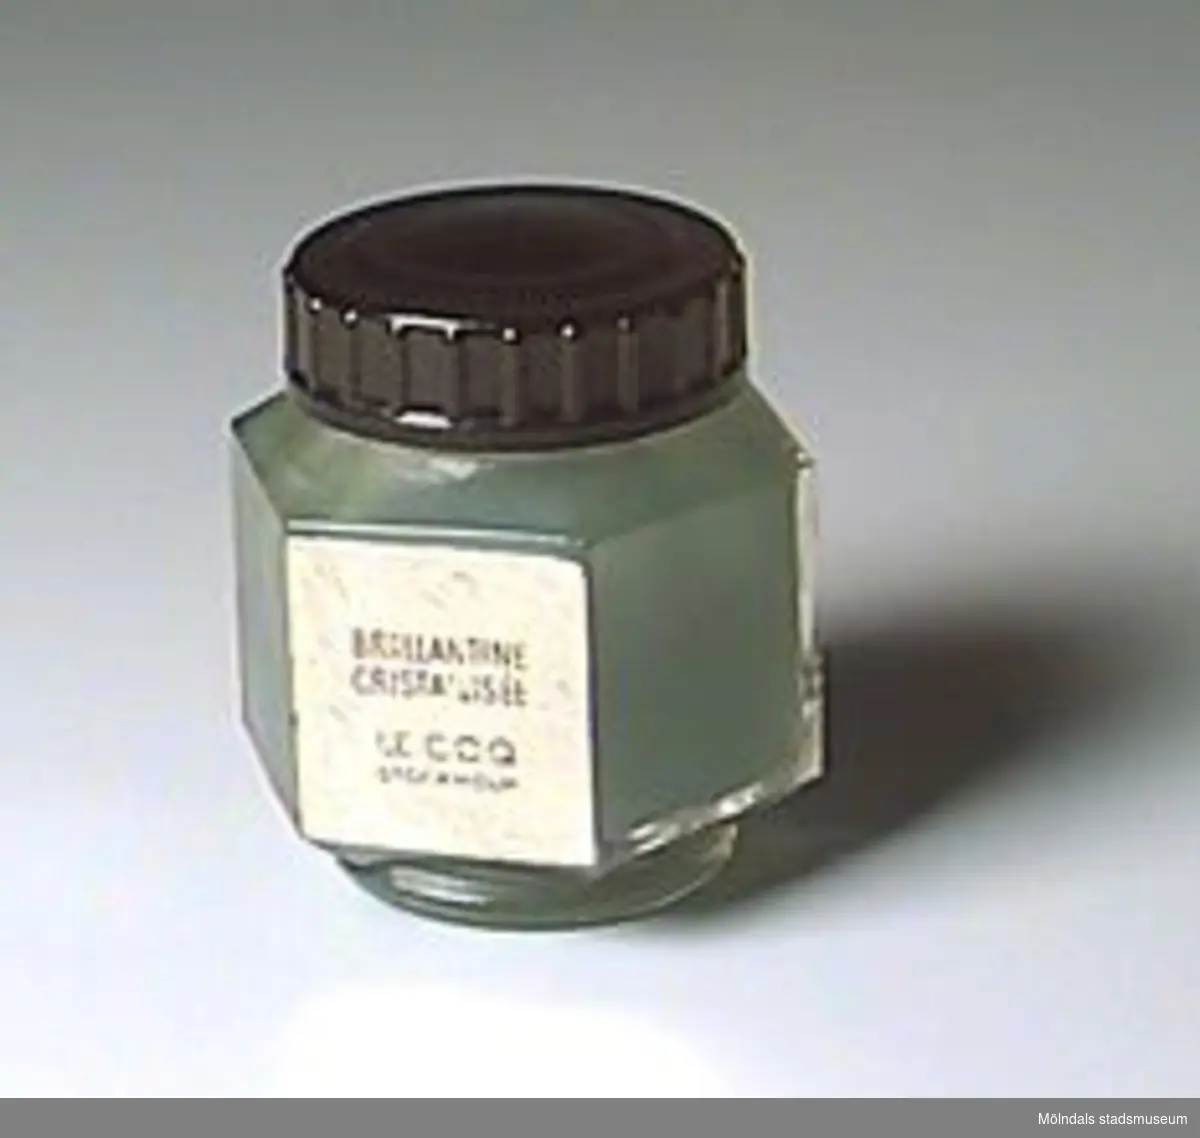 Sexkantig glasburk med rund fot, svart skruvlock. Innehåller grön pomada. Etikett i guld: "Brillantine Cristallisée/ Le coq/ Stockholm". Pris enligt prislapp: 4,75 kr.Kjellberg arbetade i väveriet på Mölnlycke fabriker 1916-1969.